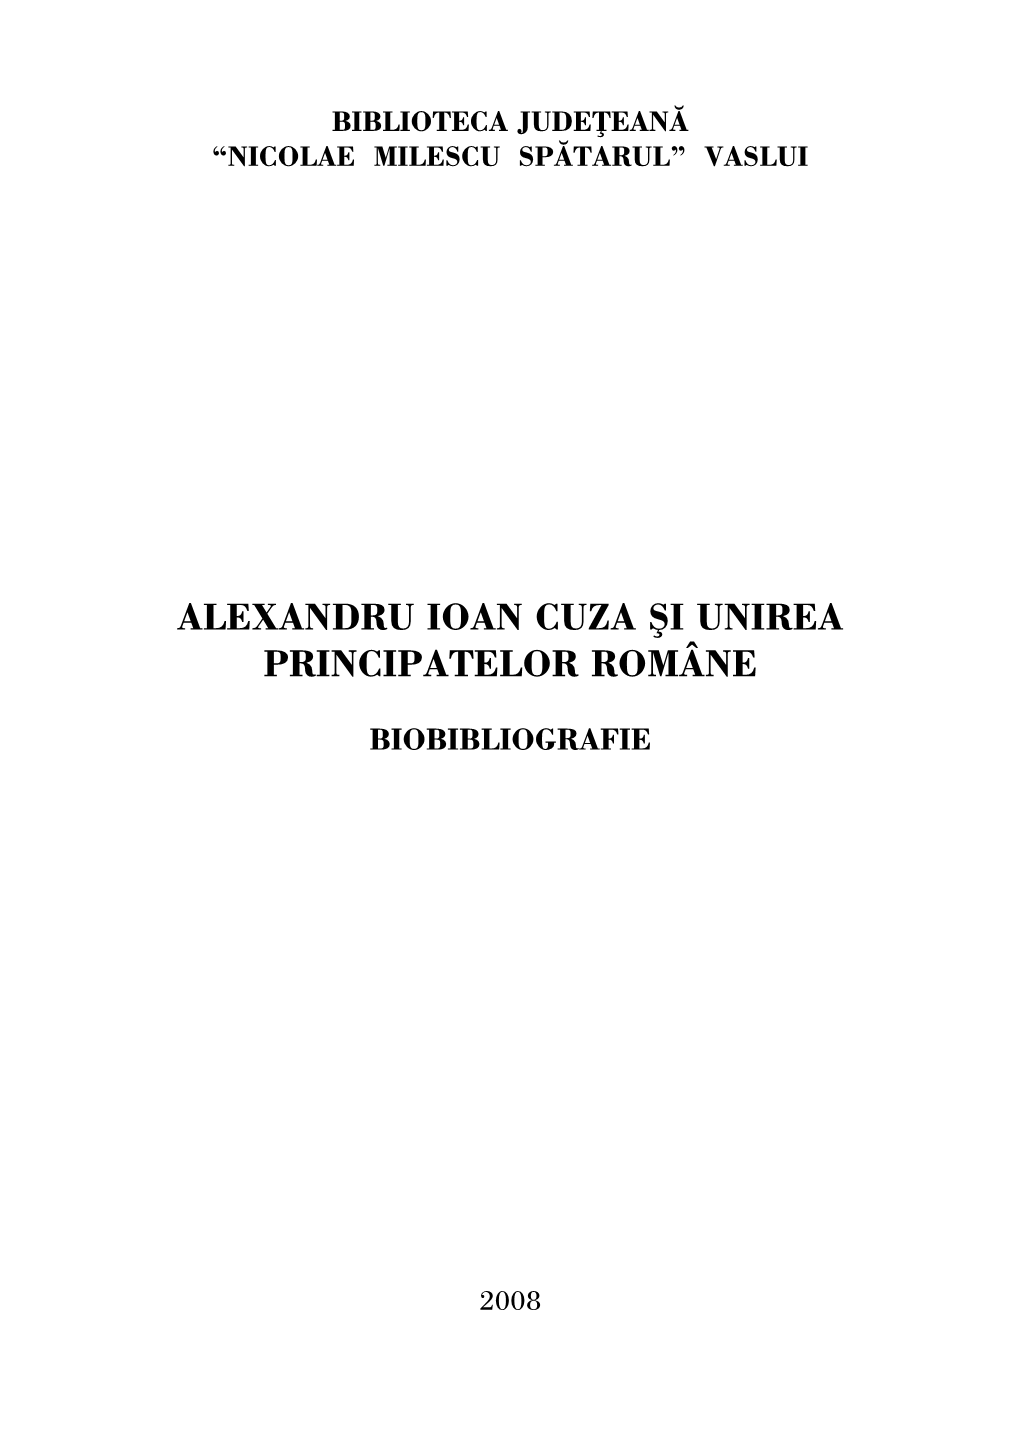 Alexandru Ioan Cuza Şi Unirea Principatelor Române